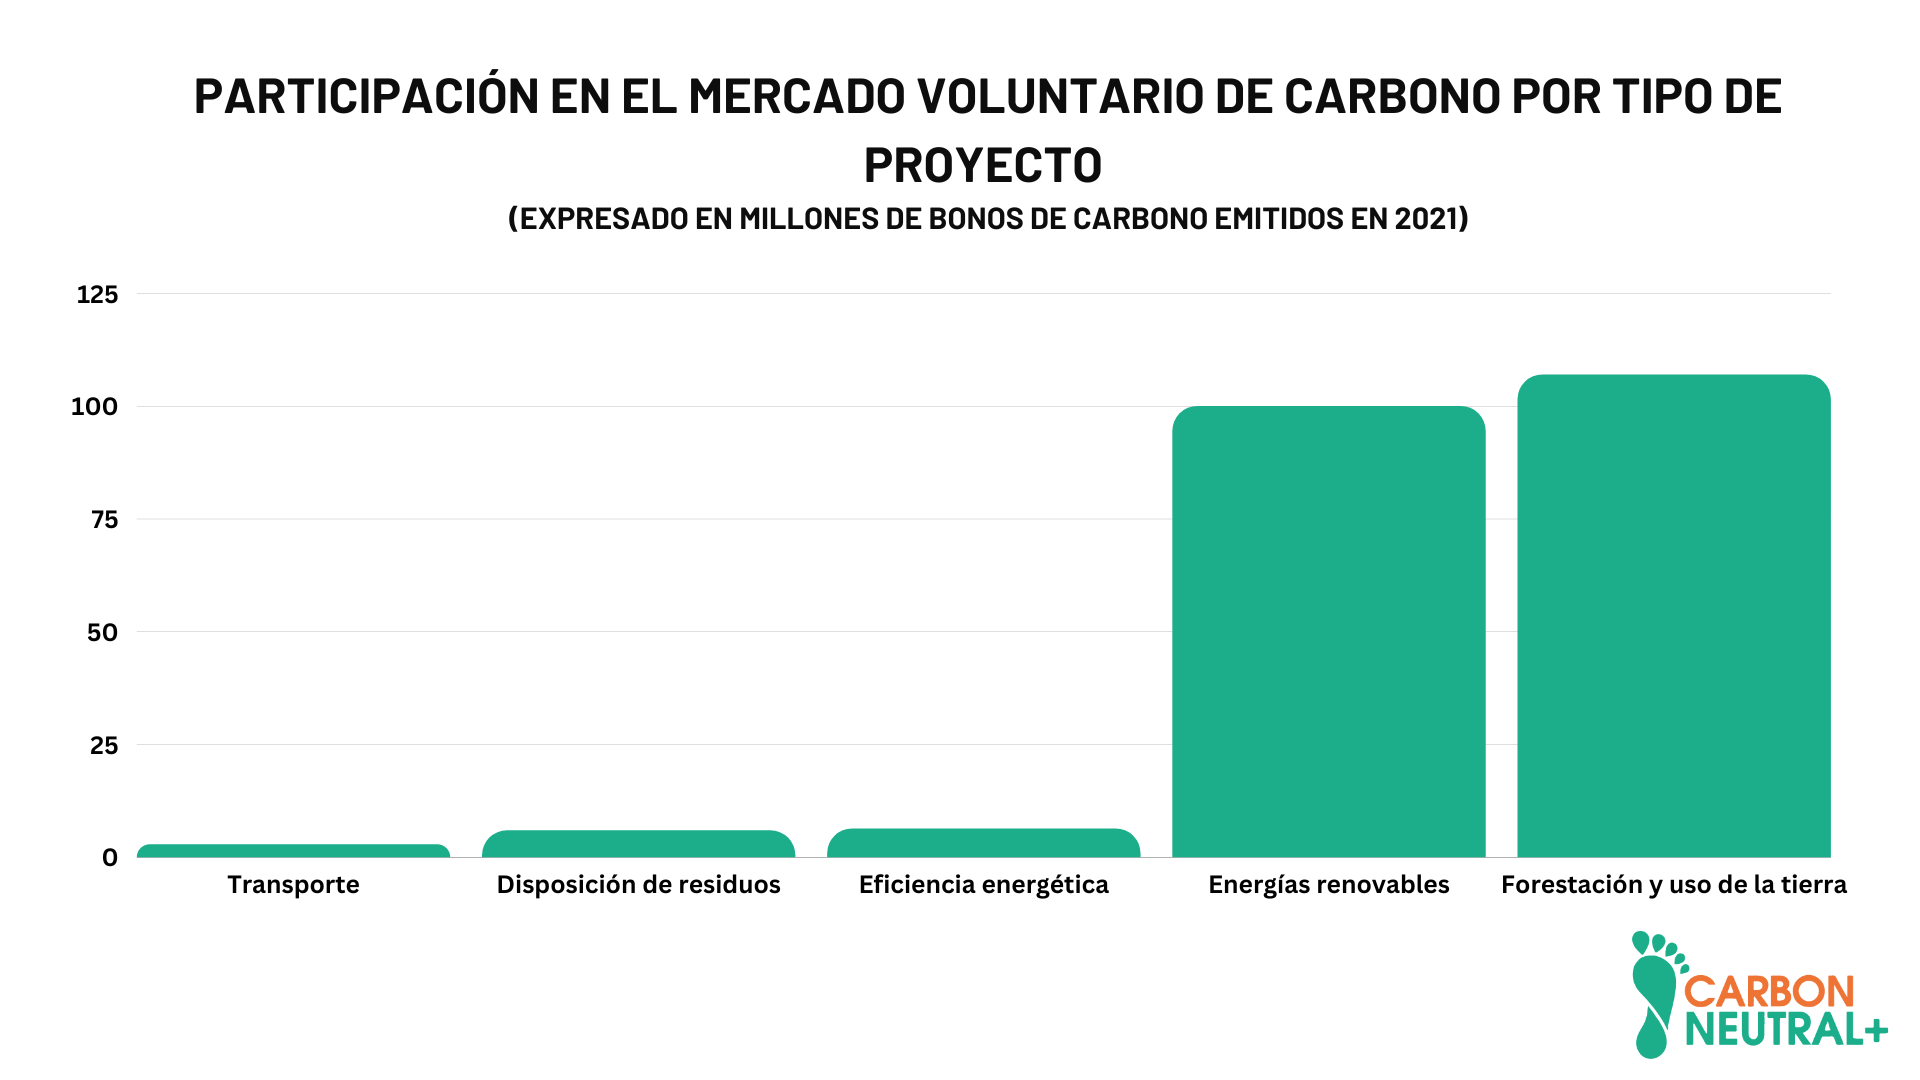 Participación en emisión de bonos en el mercado voluntario de bonos de carbono por tipo de proyecto (2021). Fuente: State of Voluntary Markets 2021. Ecosystem Marketplace